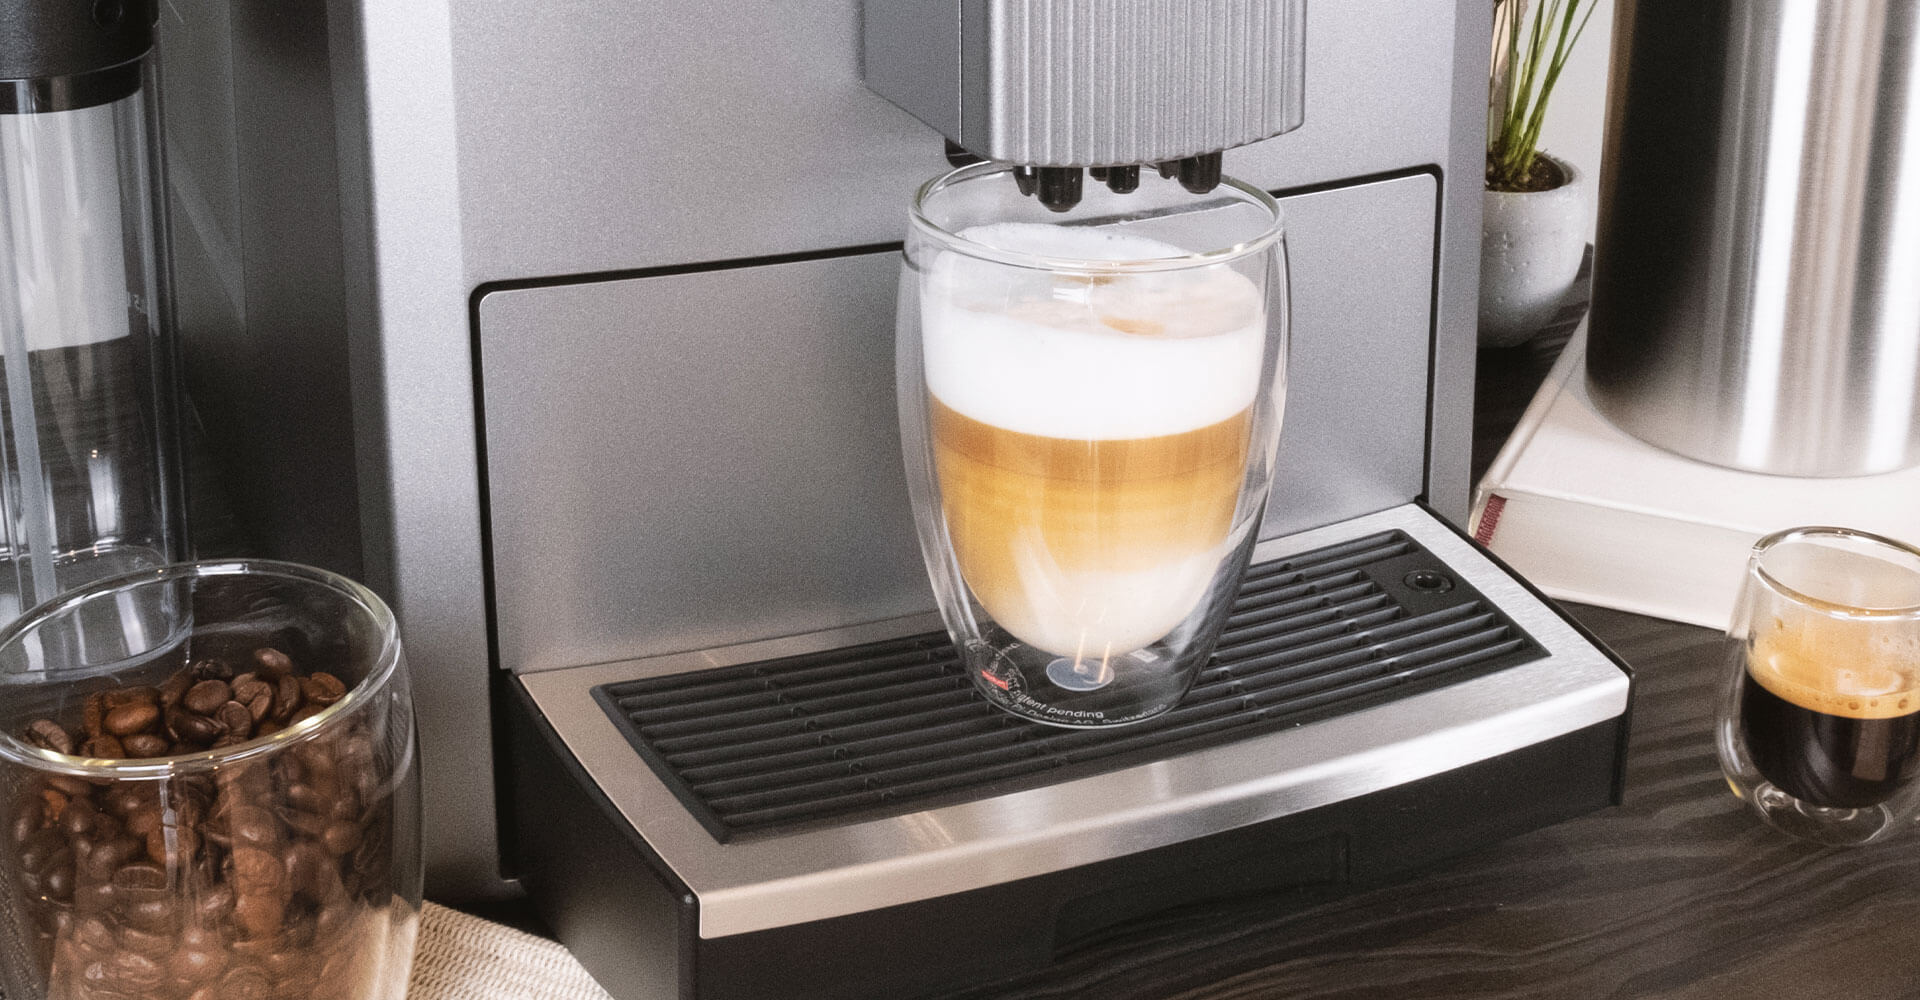 Kaffeespezialitäten wie ein Espresso oder Latte Macchiato stehen auf dem Tisch, daneben ein grauer Vollautomat